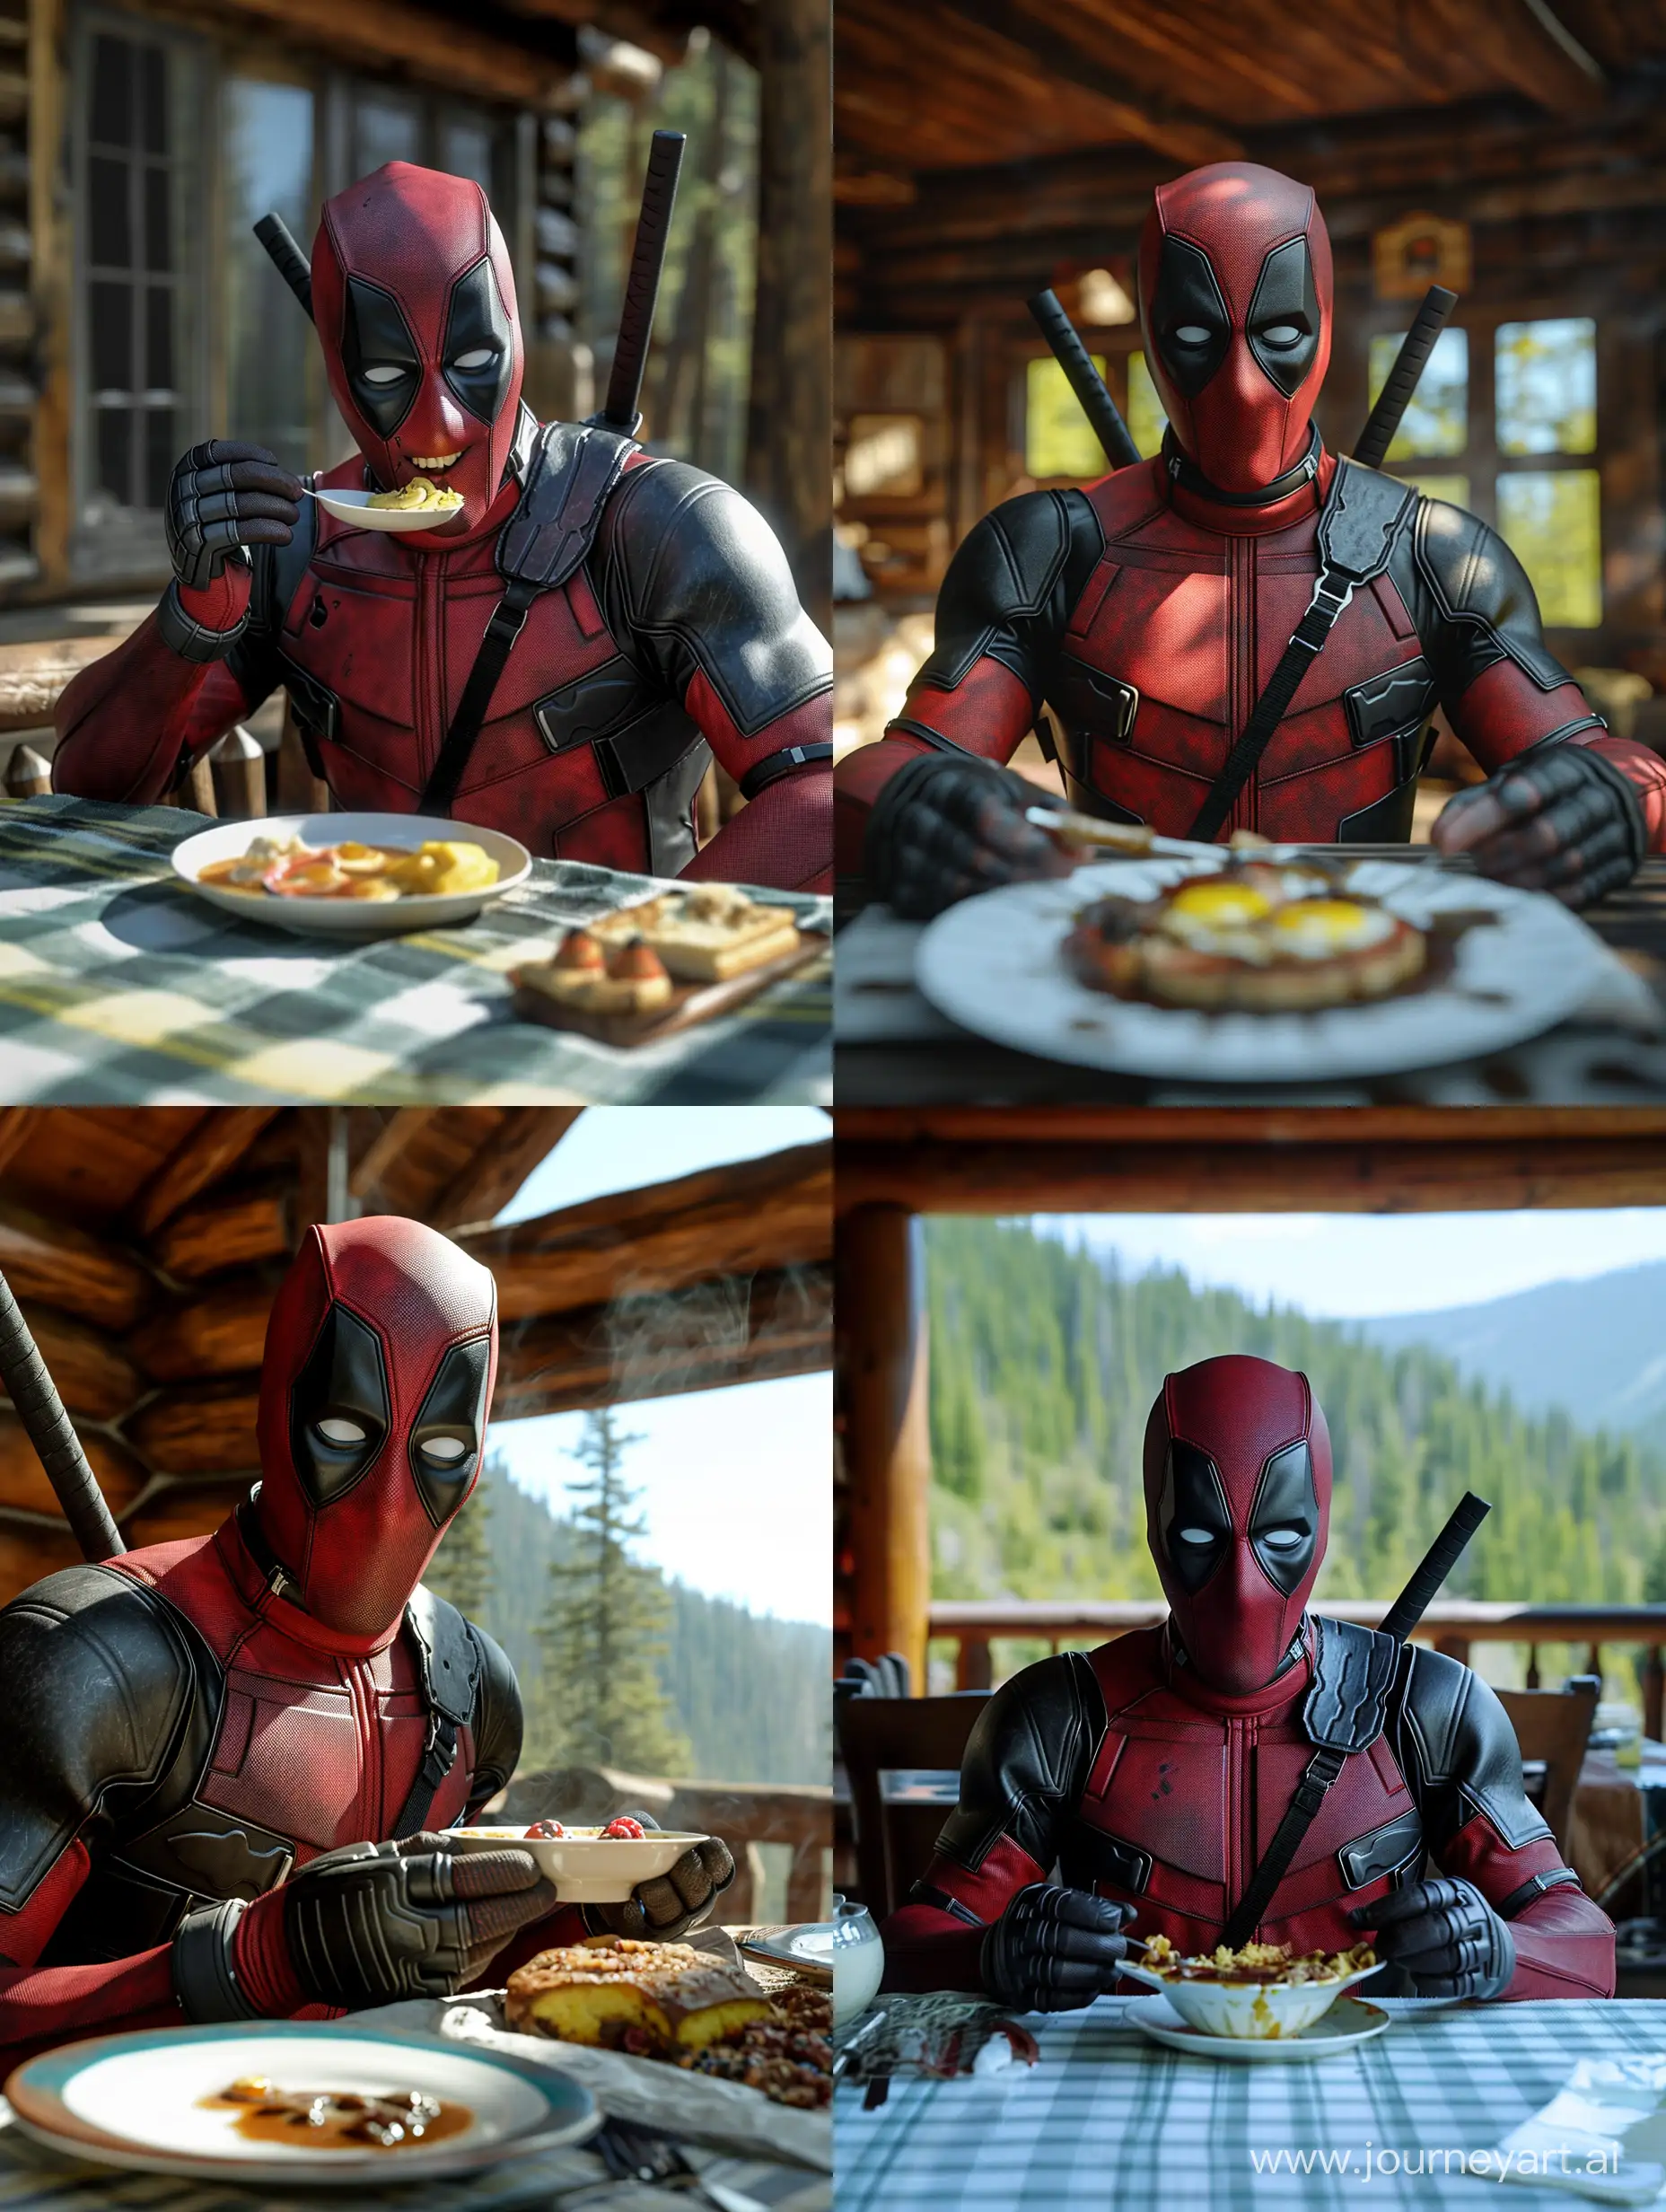 Deadpool-Enjoying-a-Symmetrical-Breakfast-in-a-Cabin